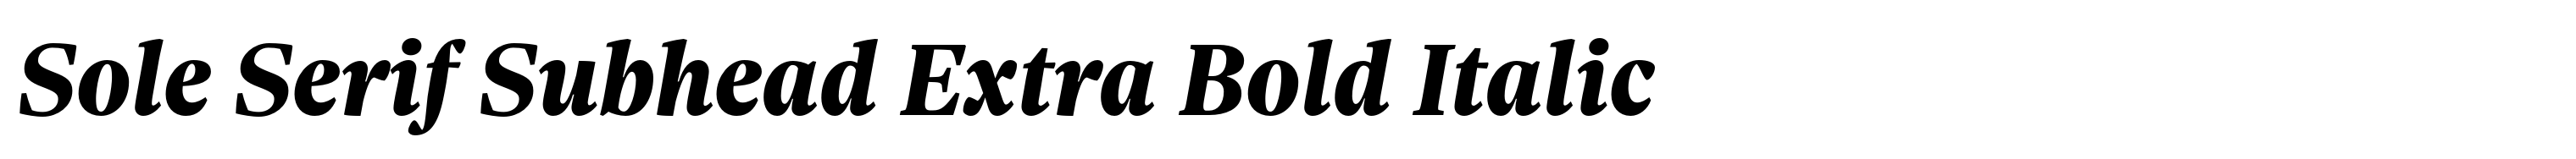 Sole Serif Subhead Extra Bold Italic